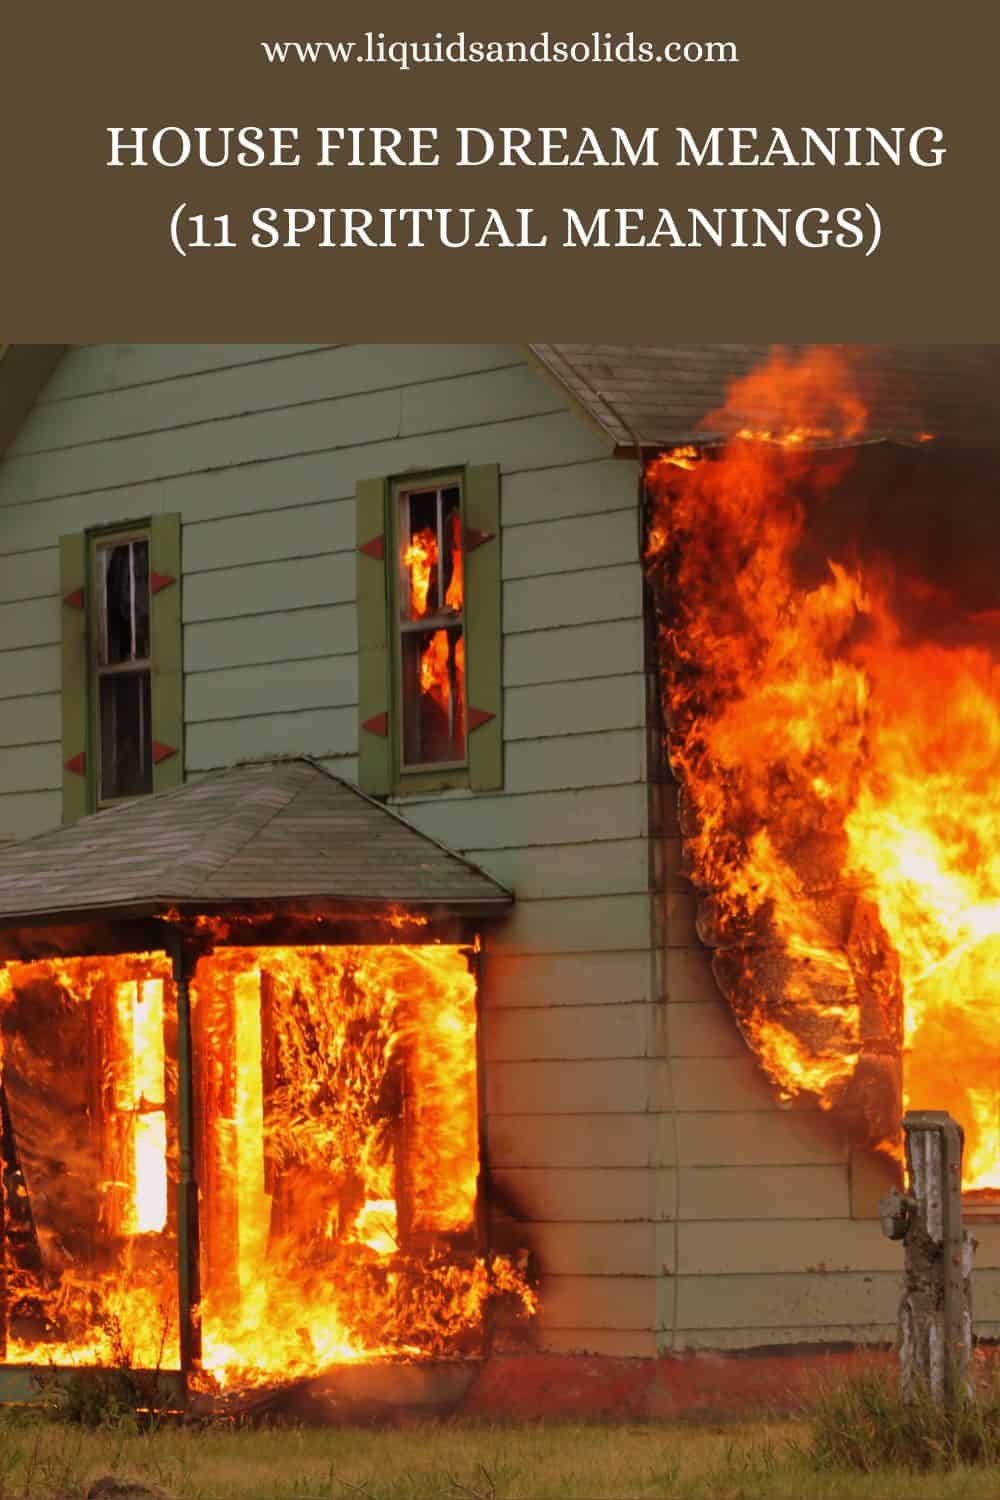  Álom a házról, ami lángokban áll? (11 spirituális jelentés)